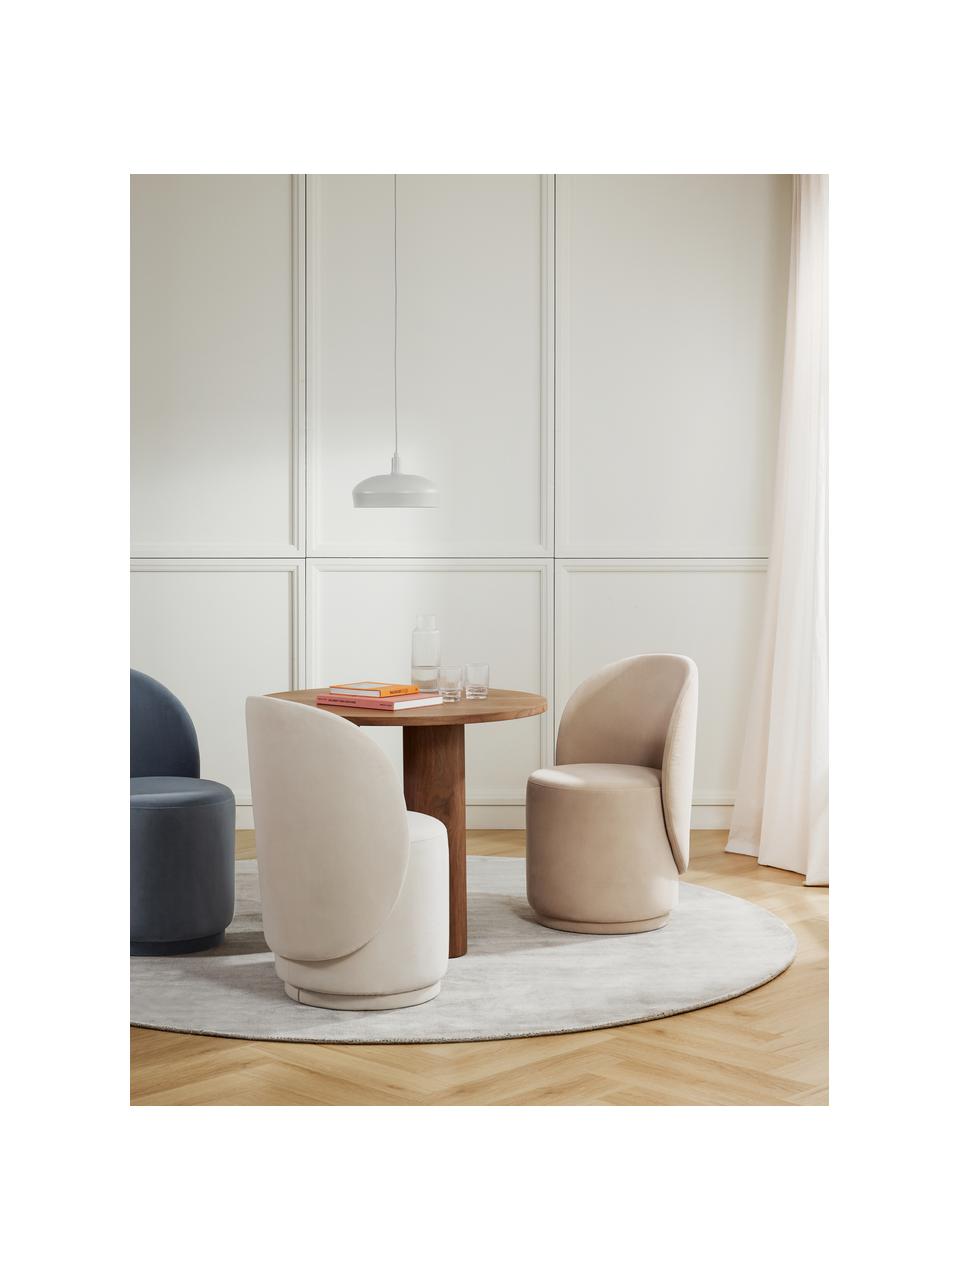 Chaise en velours rembourrée Zeyno, Velours (100 % polyester), Velours beige foncé, larg. 54 x haut. 82 cm